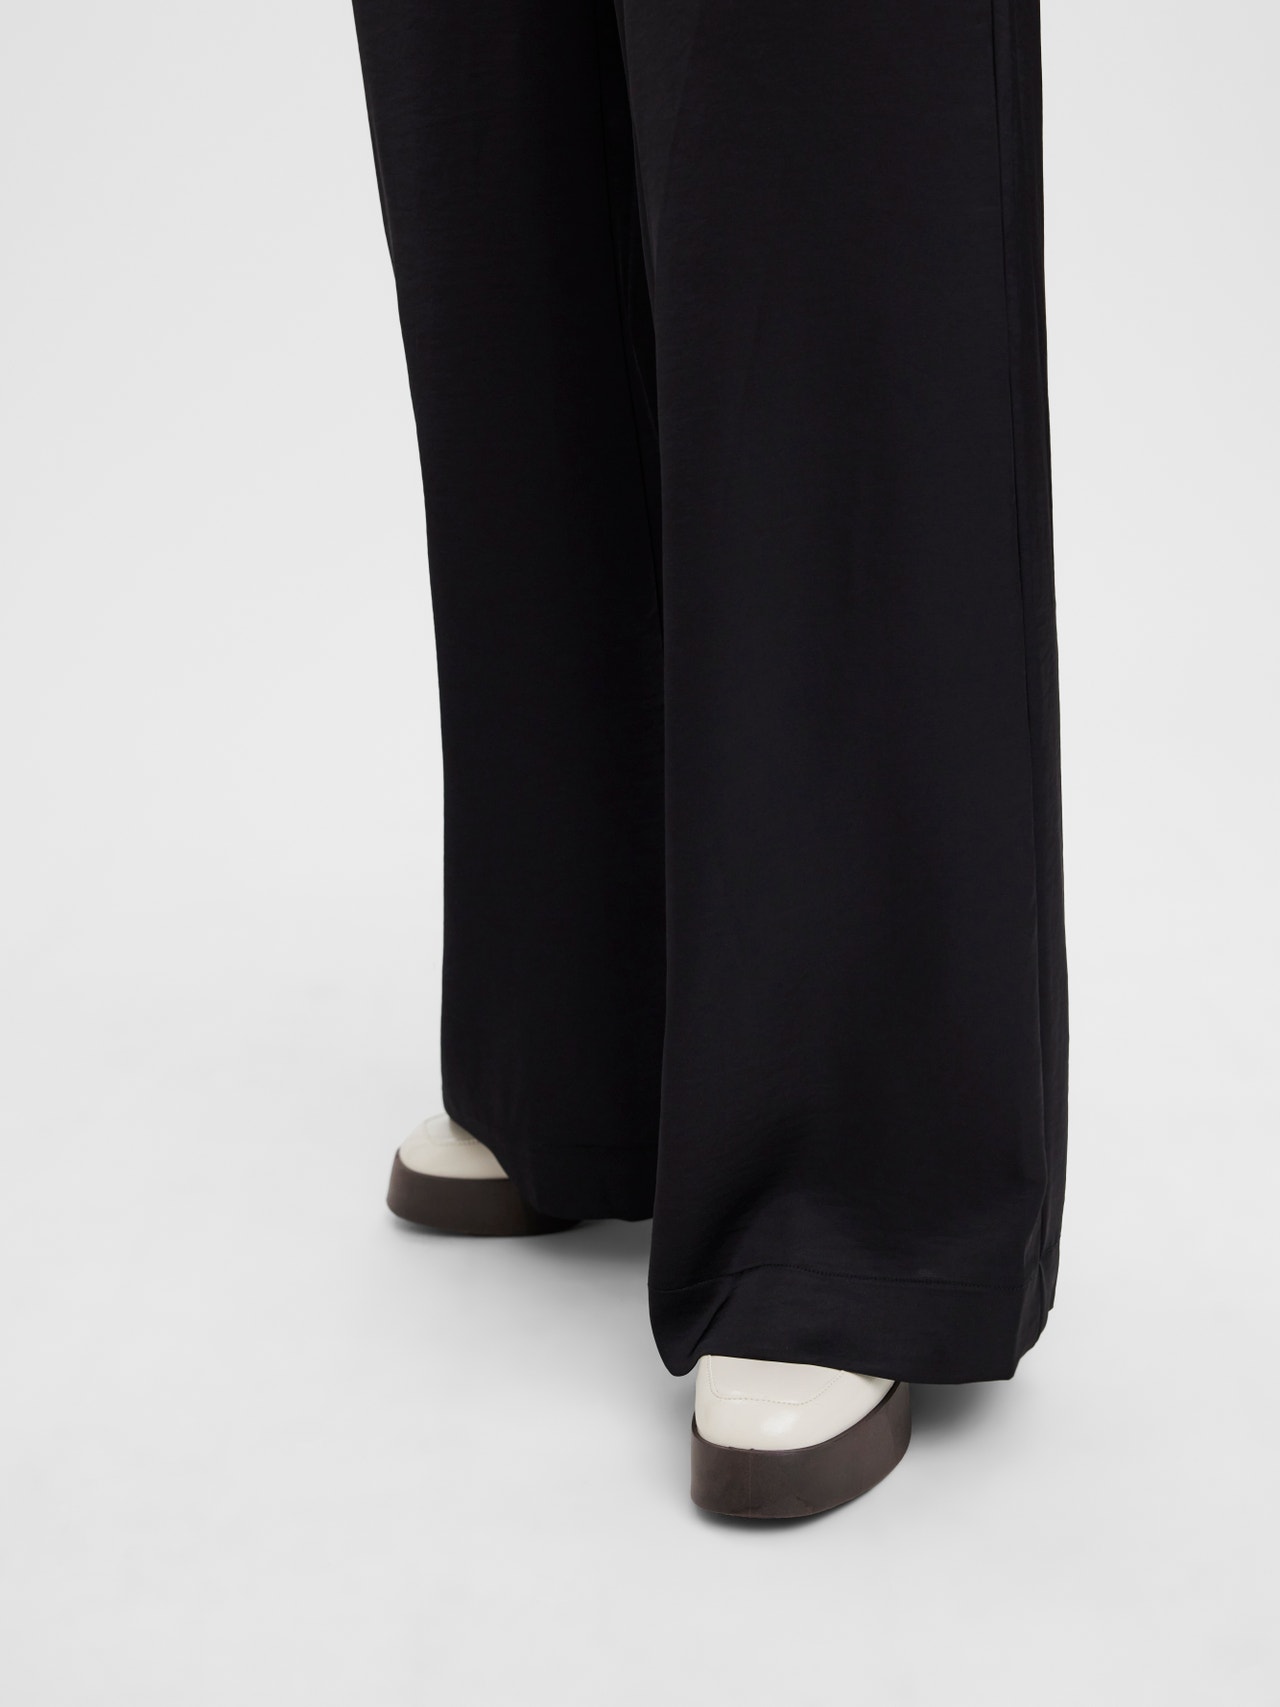 Vero Moda VMFELICIA Trousers -Black - 10282565